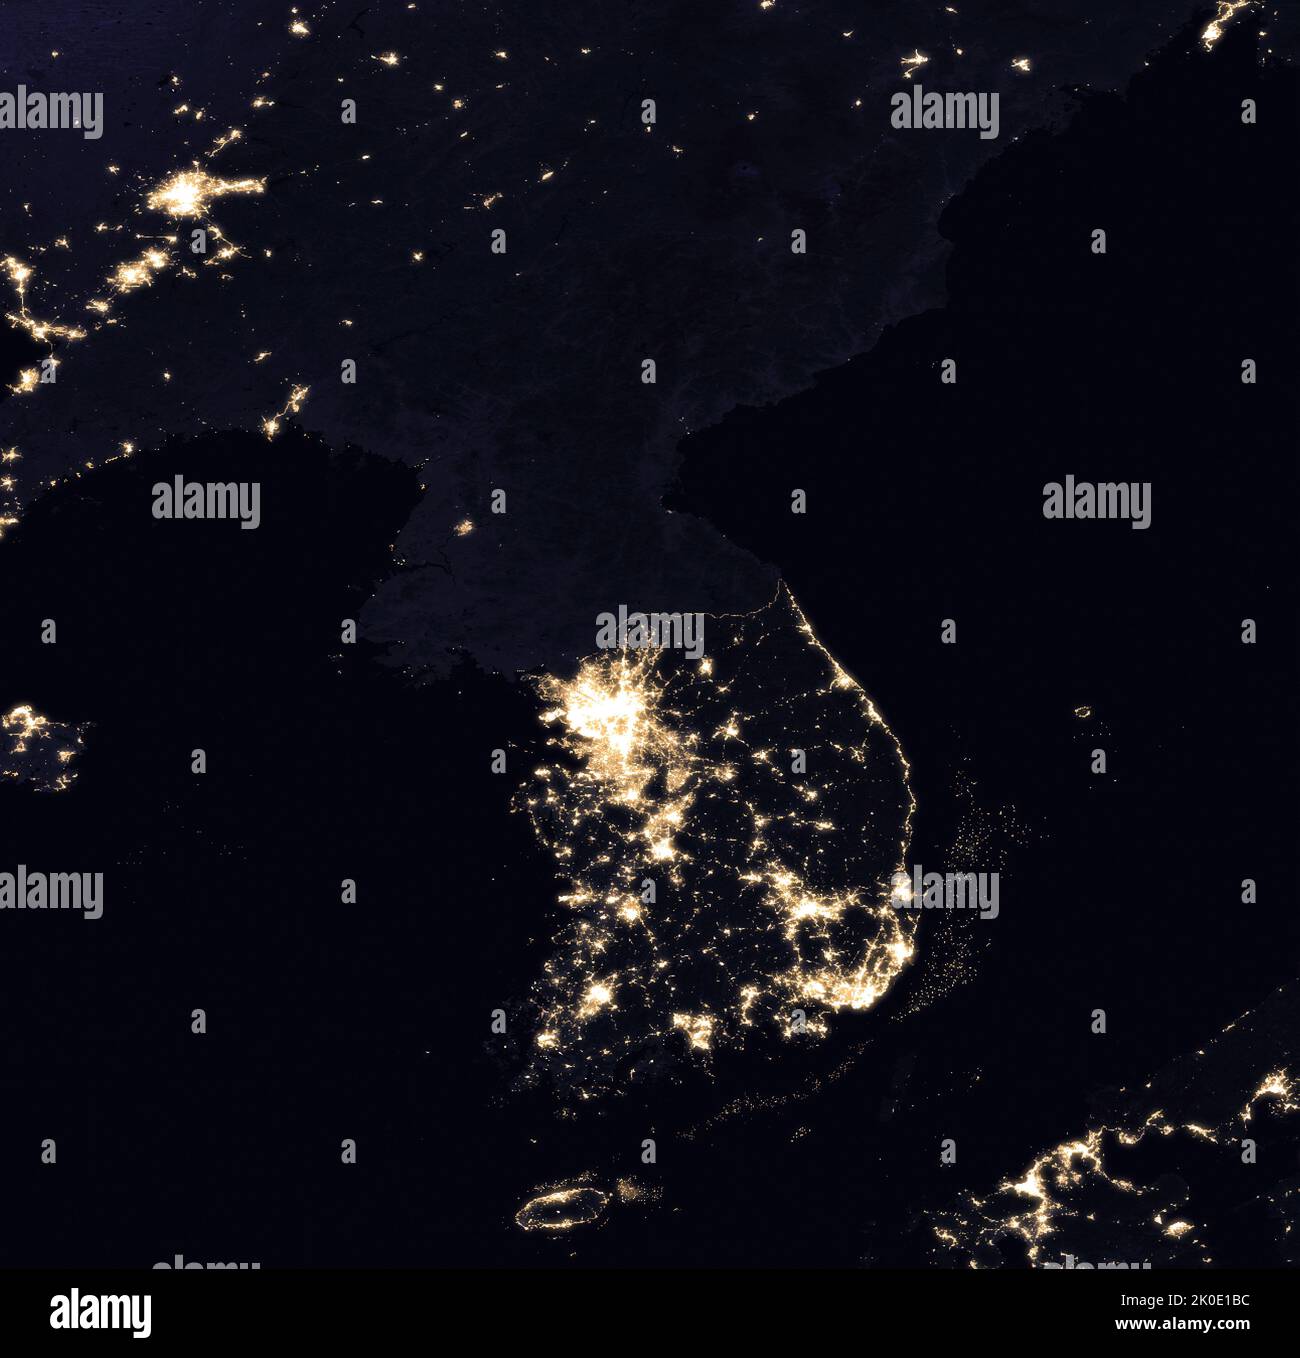 Koreanische Halbinsel und chinesische Grenzgebiete in der Nacht. Der starke Kontrast zeigt sich in diesem Satellitenbild aus dem Jahr 2016, das die Fülle der Stadtlichter in Südkorea und das Fehlen von Strom in Nordkorea zeigt. Stockfoto